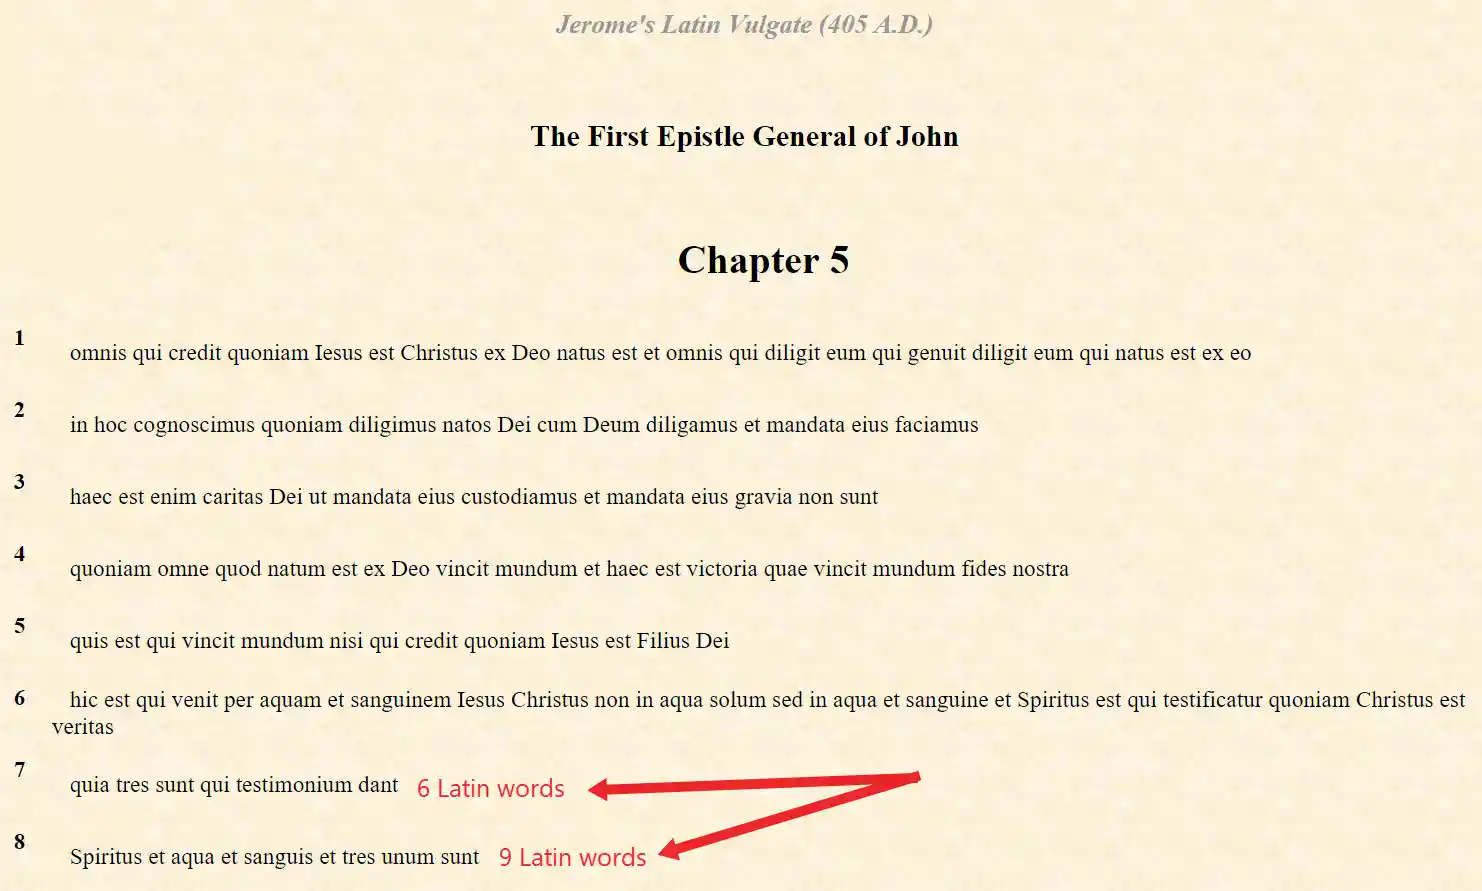 képernyőképe a Szent Jerome latin Vulgate szövegéről az 390AD - 405A.D-ből.